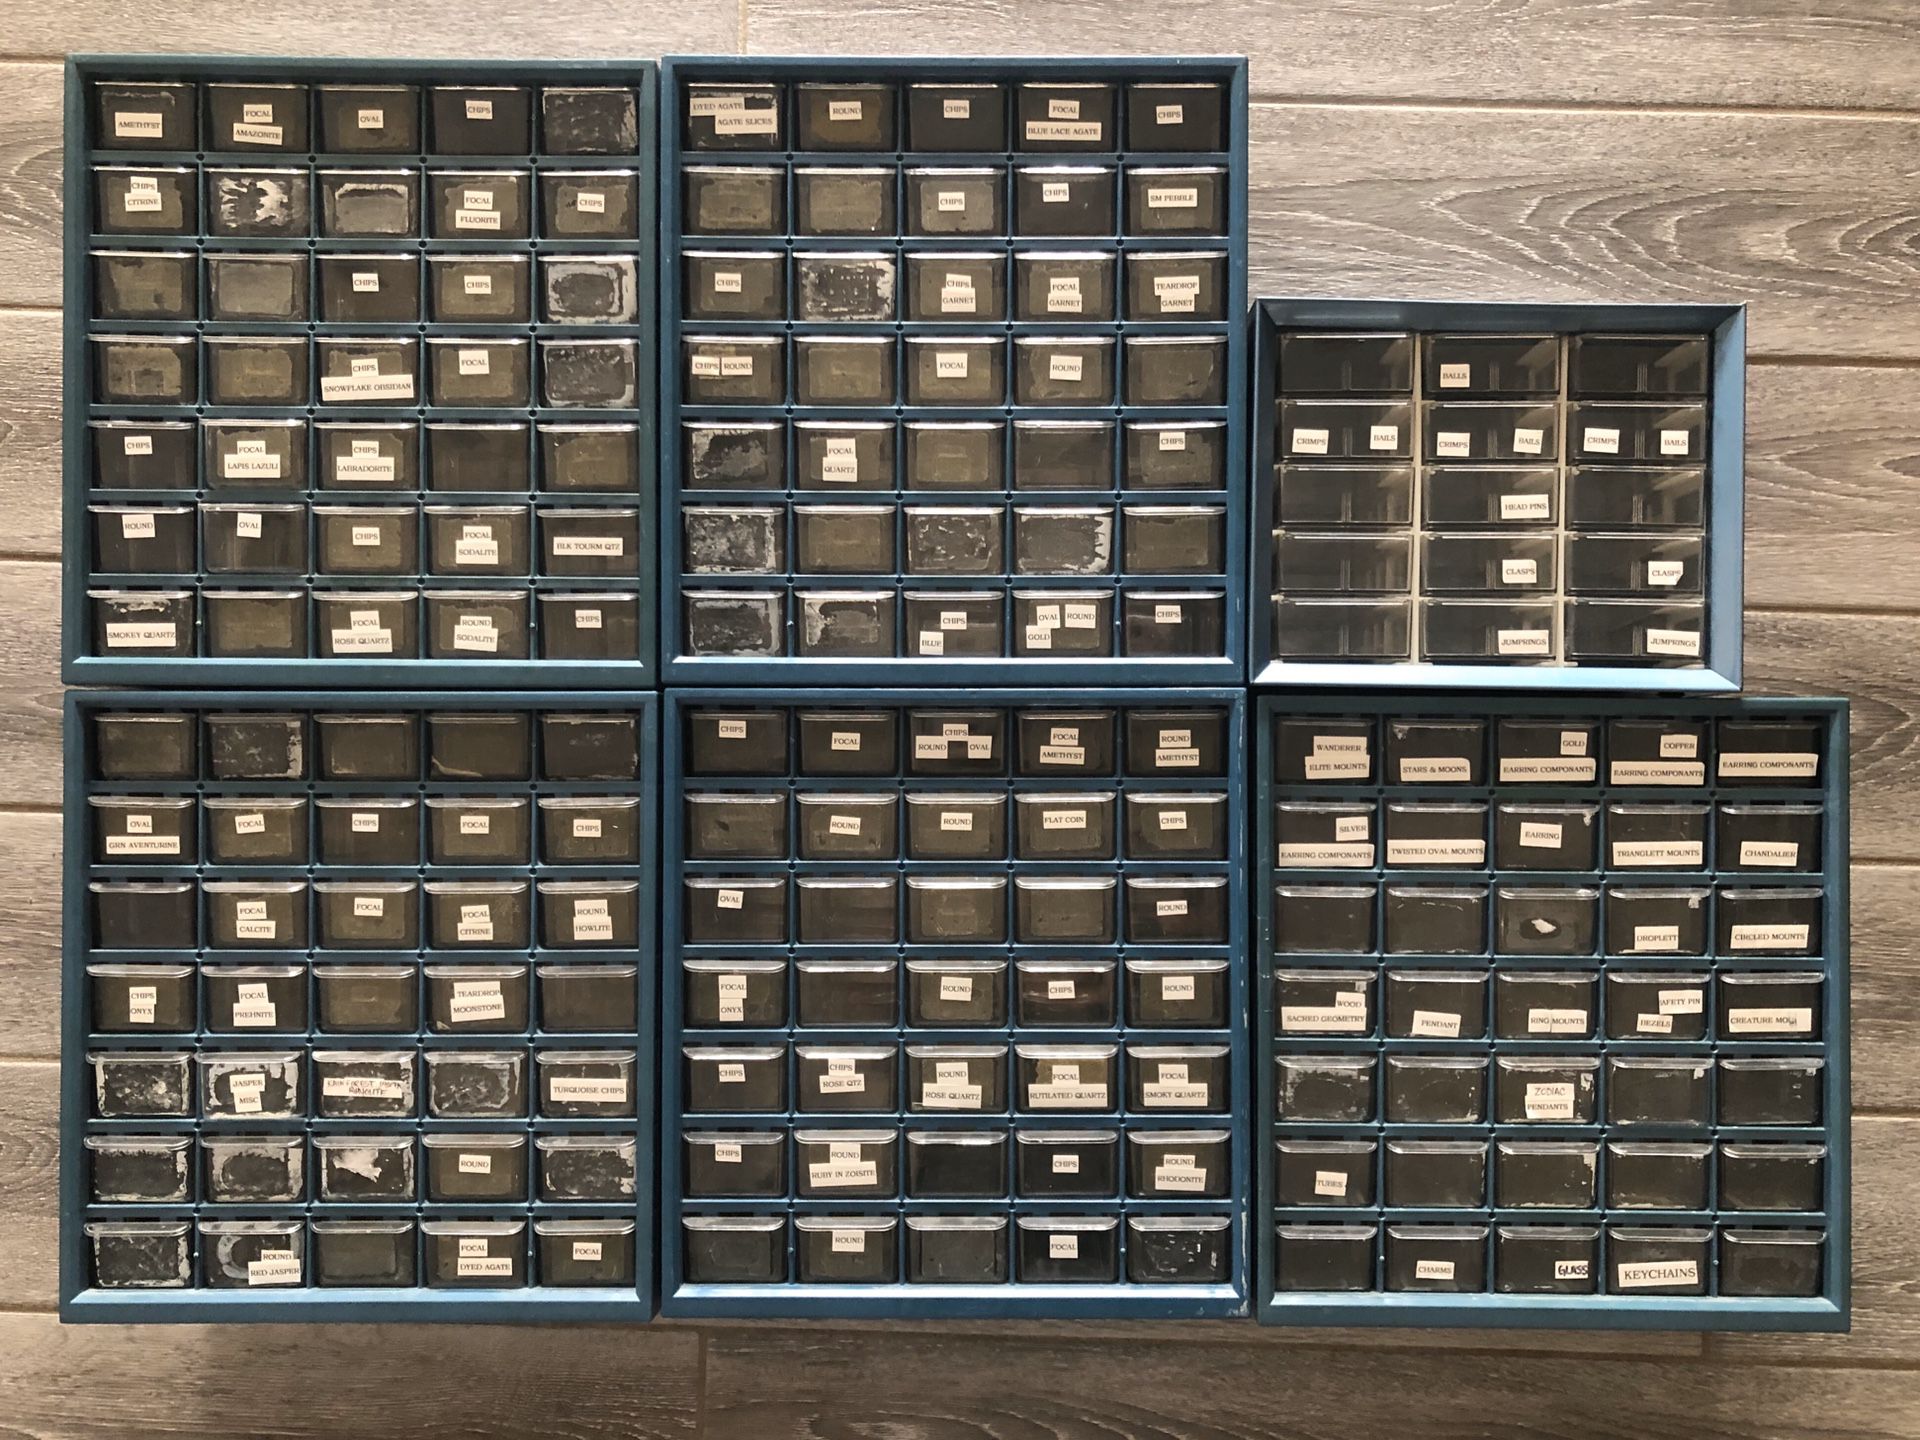 Organizing drawers 6pc lot 190drawers!!! $50 garage hobby craft storage